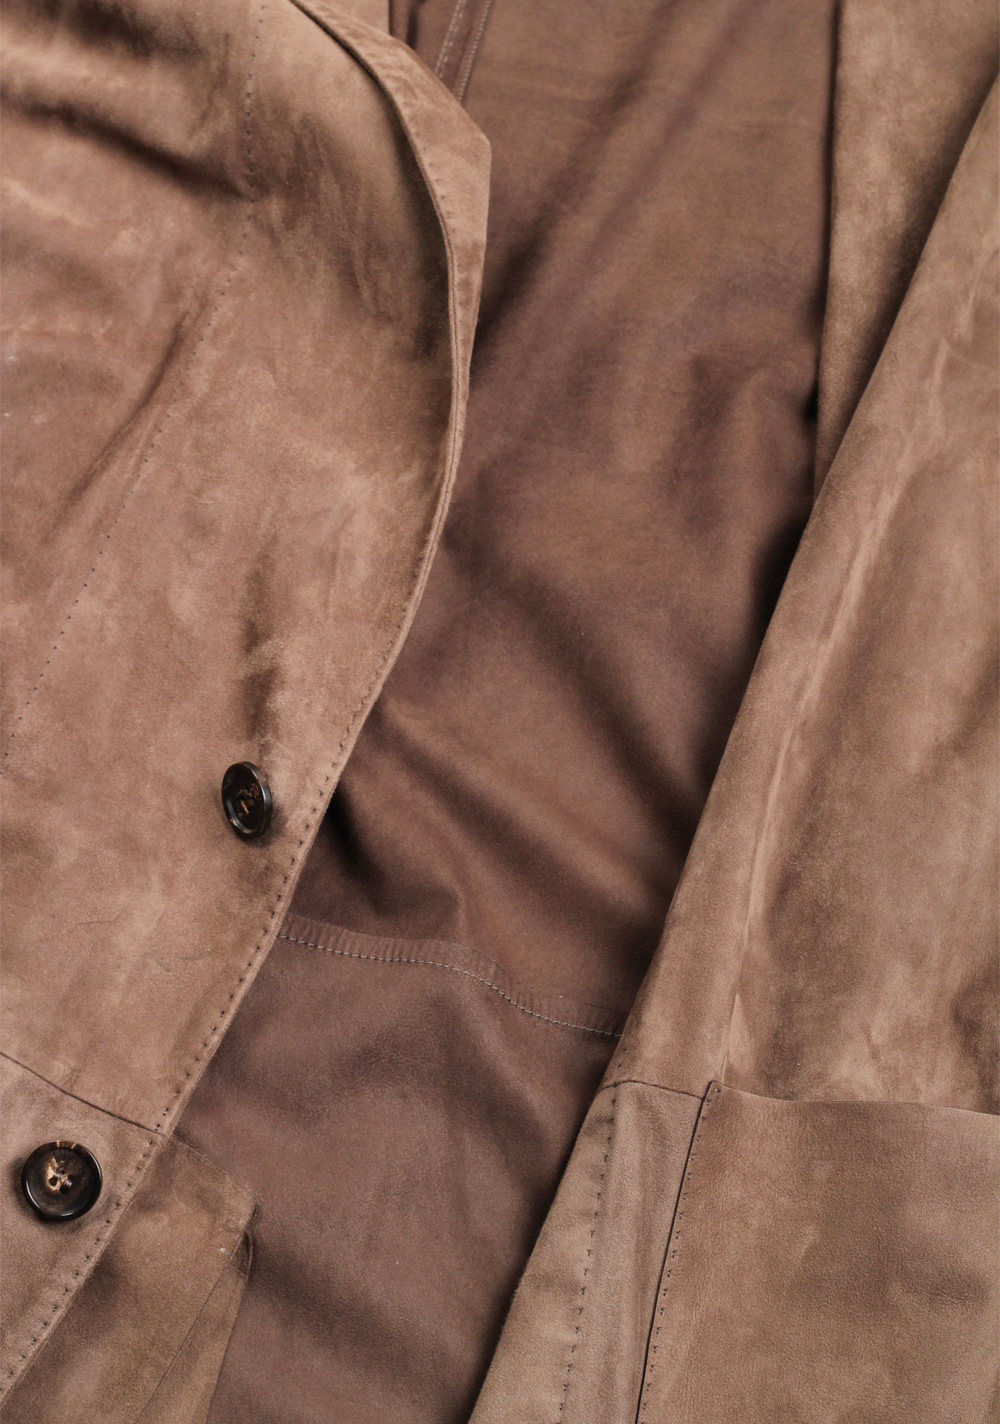 Zegna Brown Suede Blazer Jacket Coat Size 54 / 44R U.S. | Costume Limité